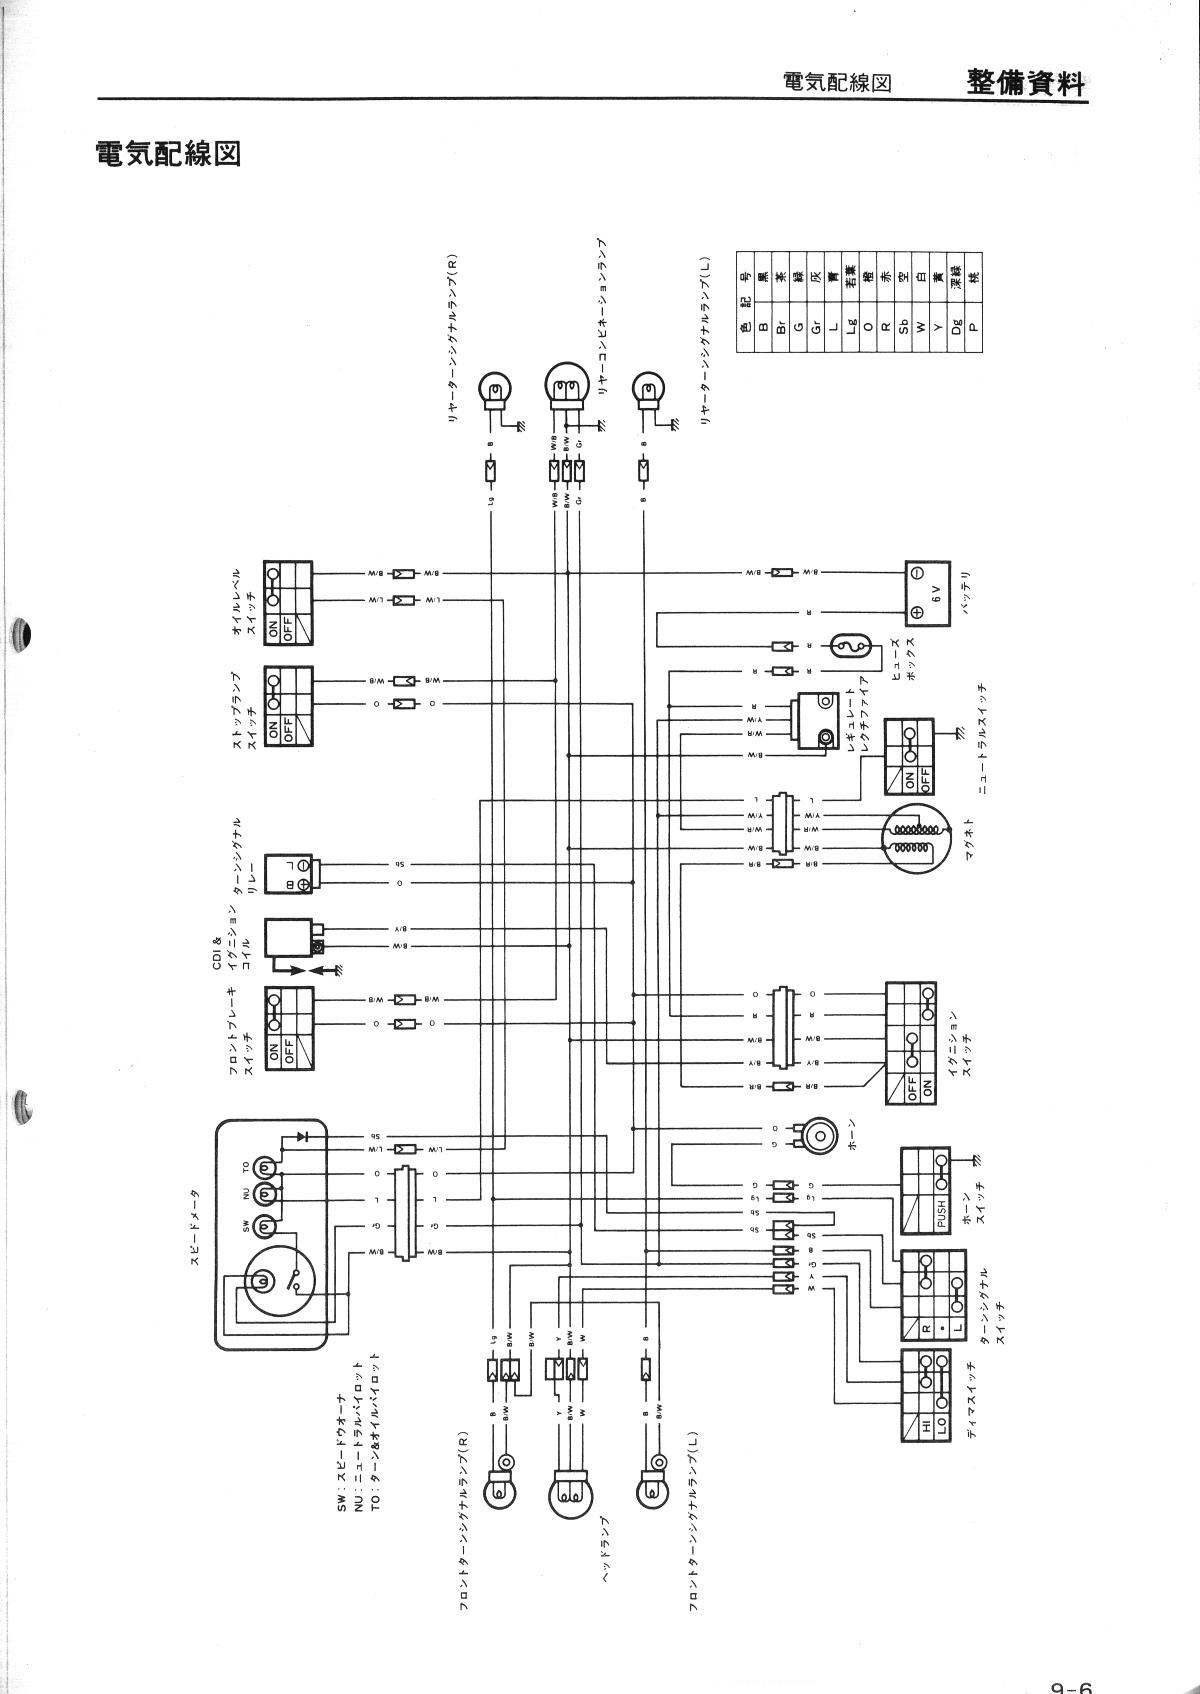 120v shunt trip breaker wiring diagram